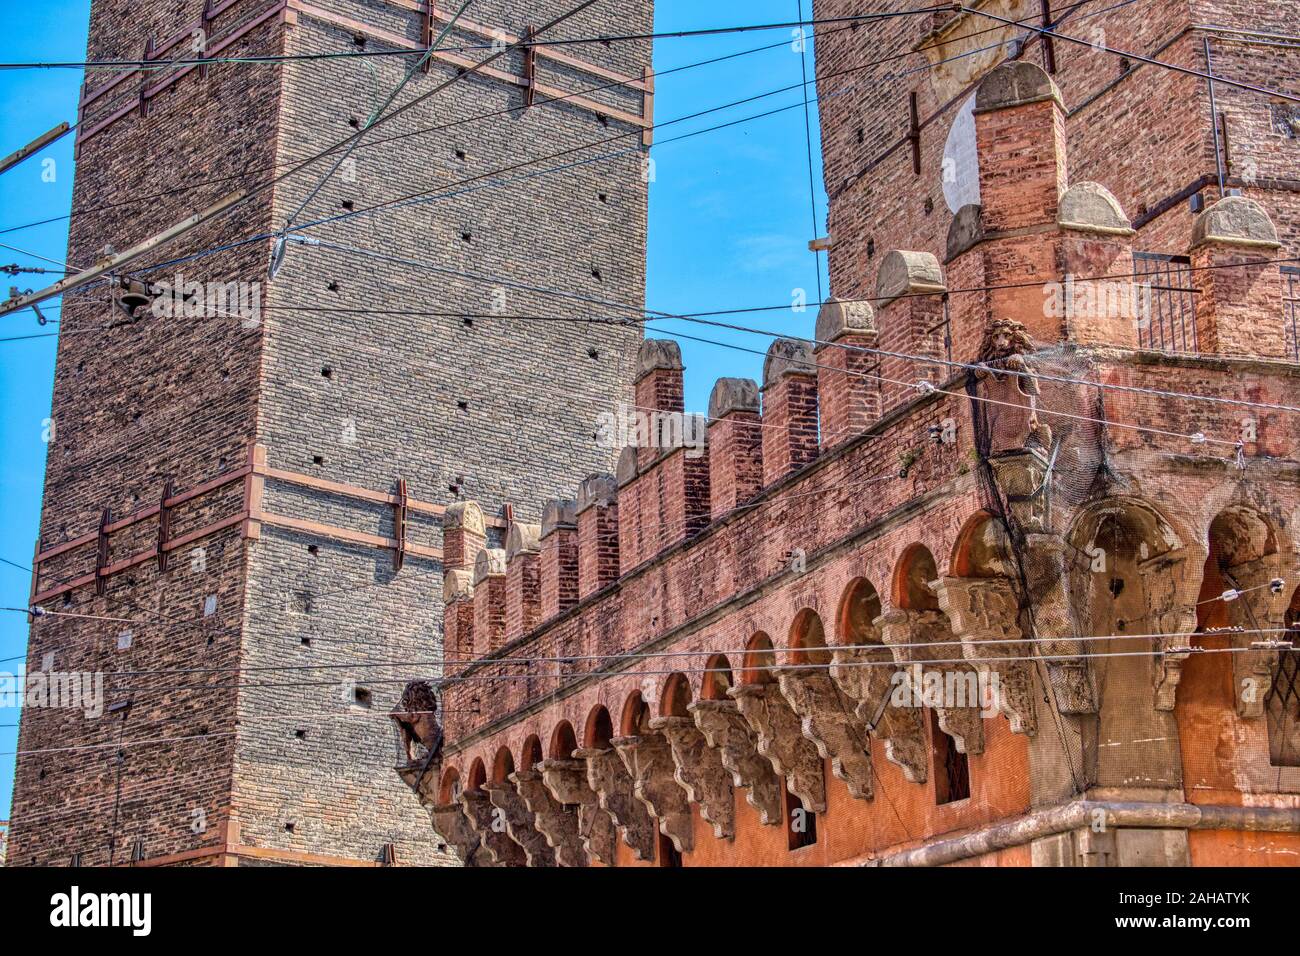 Dettaglio delle famose due torri medievali di Bologna in Italia, Asinelli e Garisenda Foto Stock